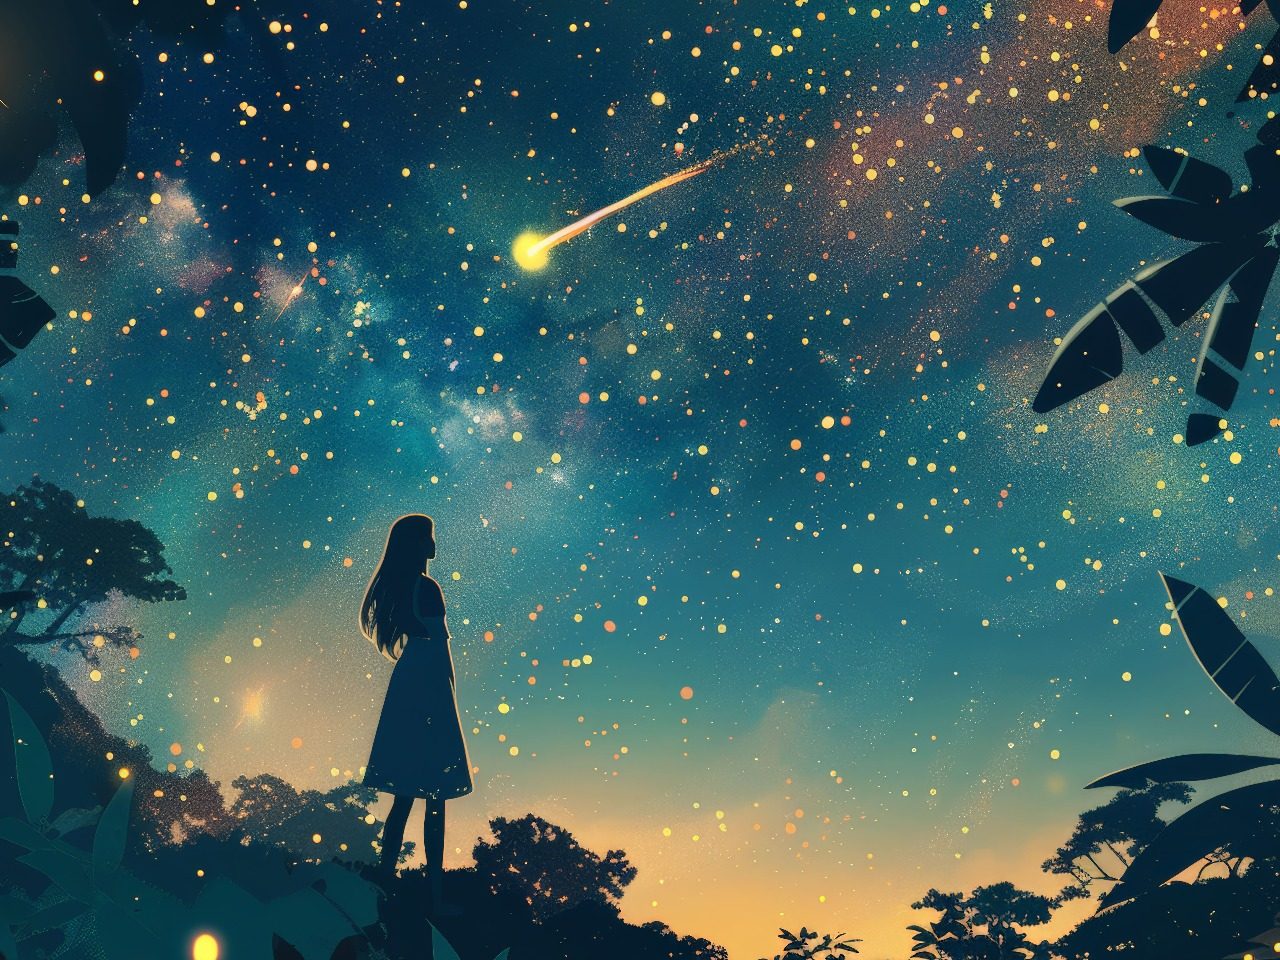 Dessin d'une fille qui se tient devant un ciel étoilé, une étoile filante passe.